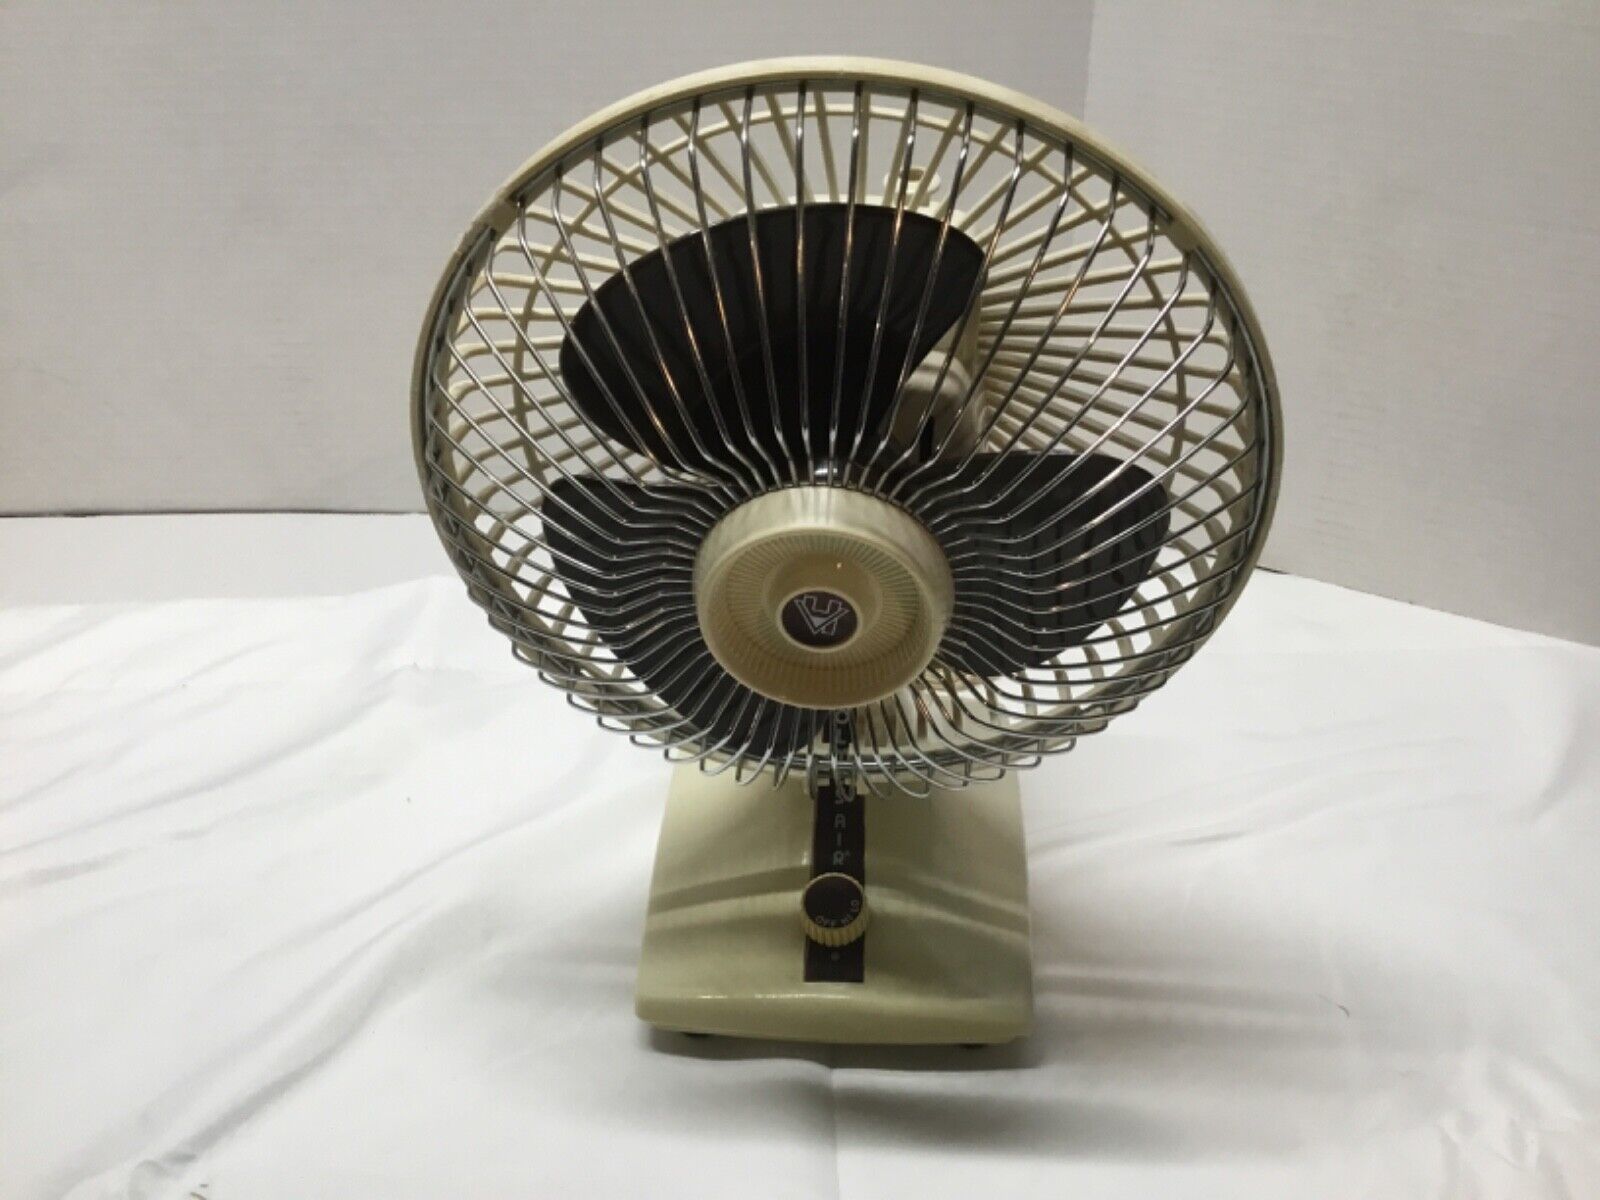 Vintage Holmes Air HAOF-8 7” Desk Fan - 2 speeds, Retro, Working - $29.70